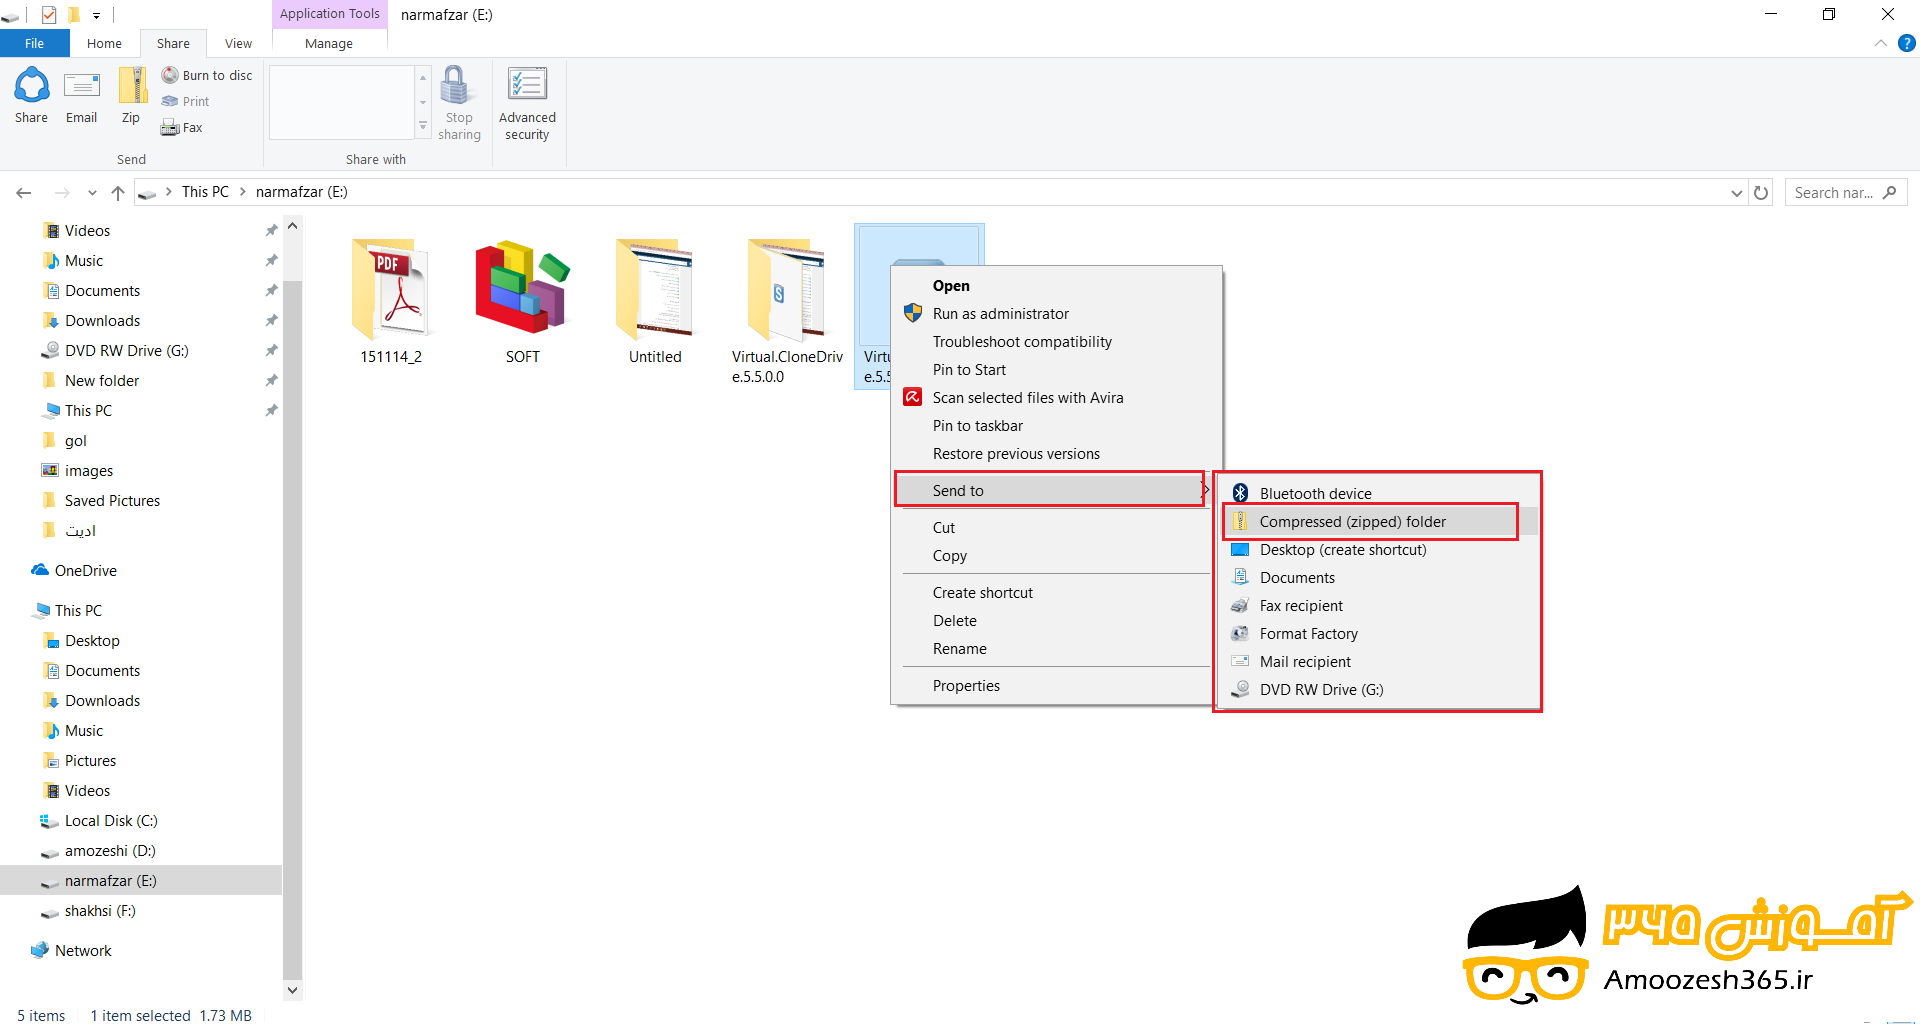 نحوه فشرده سازی فایل نحوه زیپ کردن فایل (Extract Files from a Compressed Folder) در سیستم عامل ویندوز